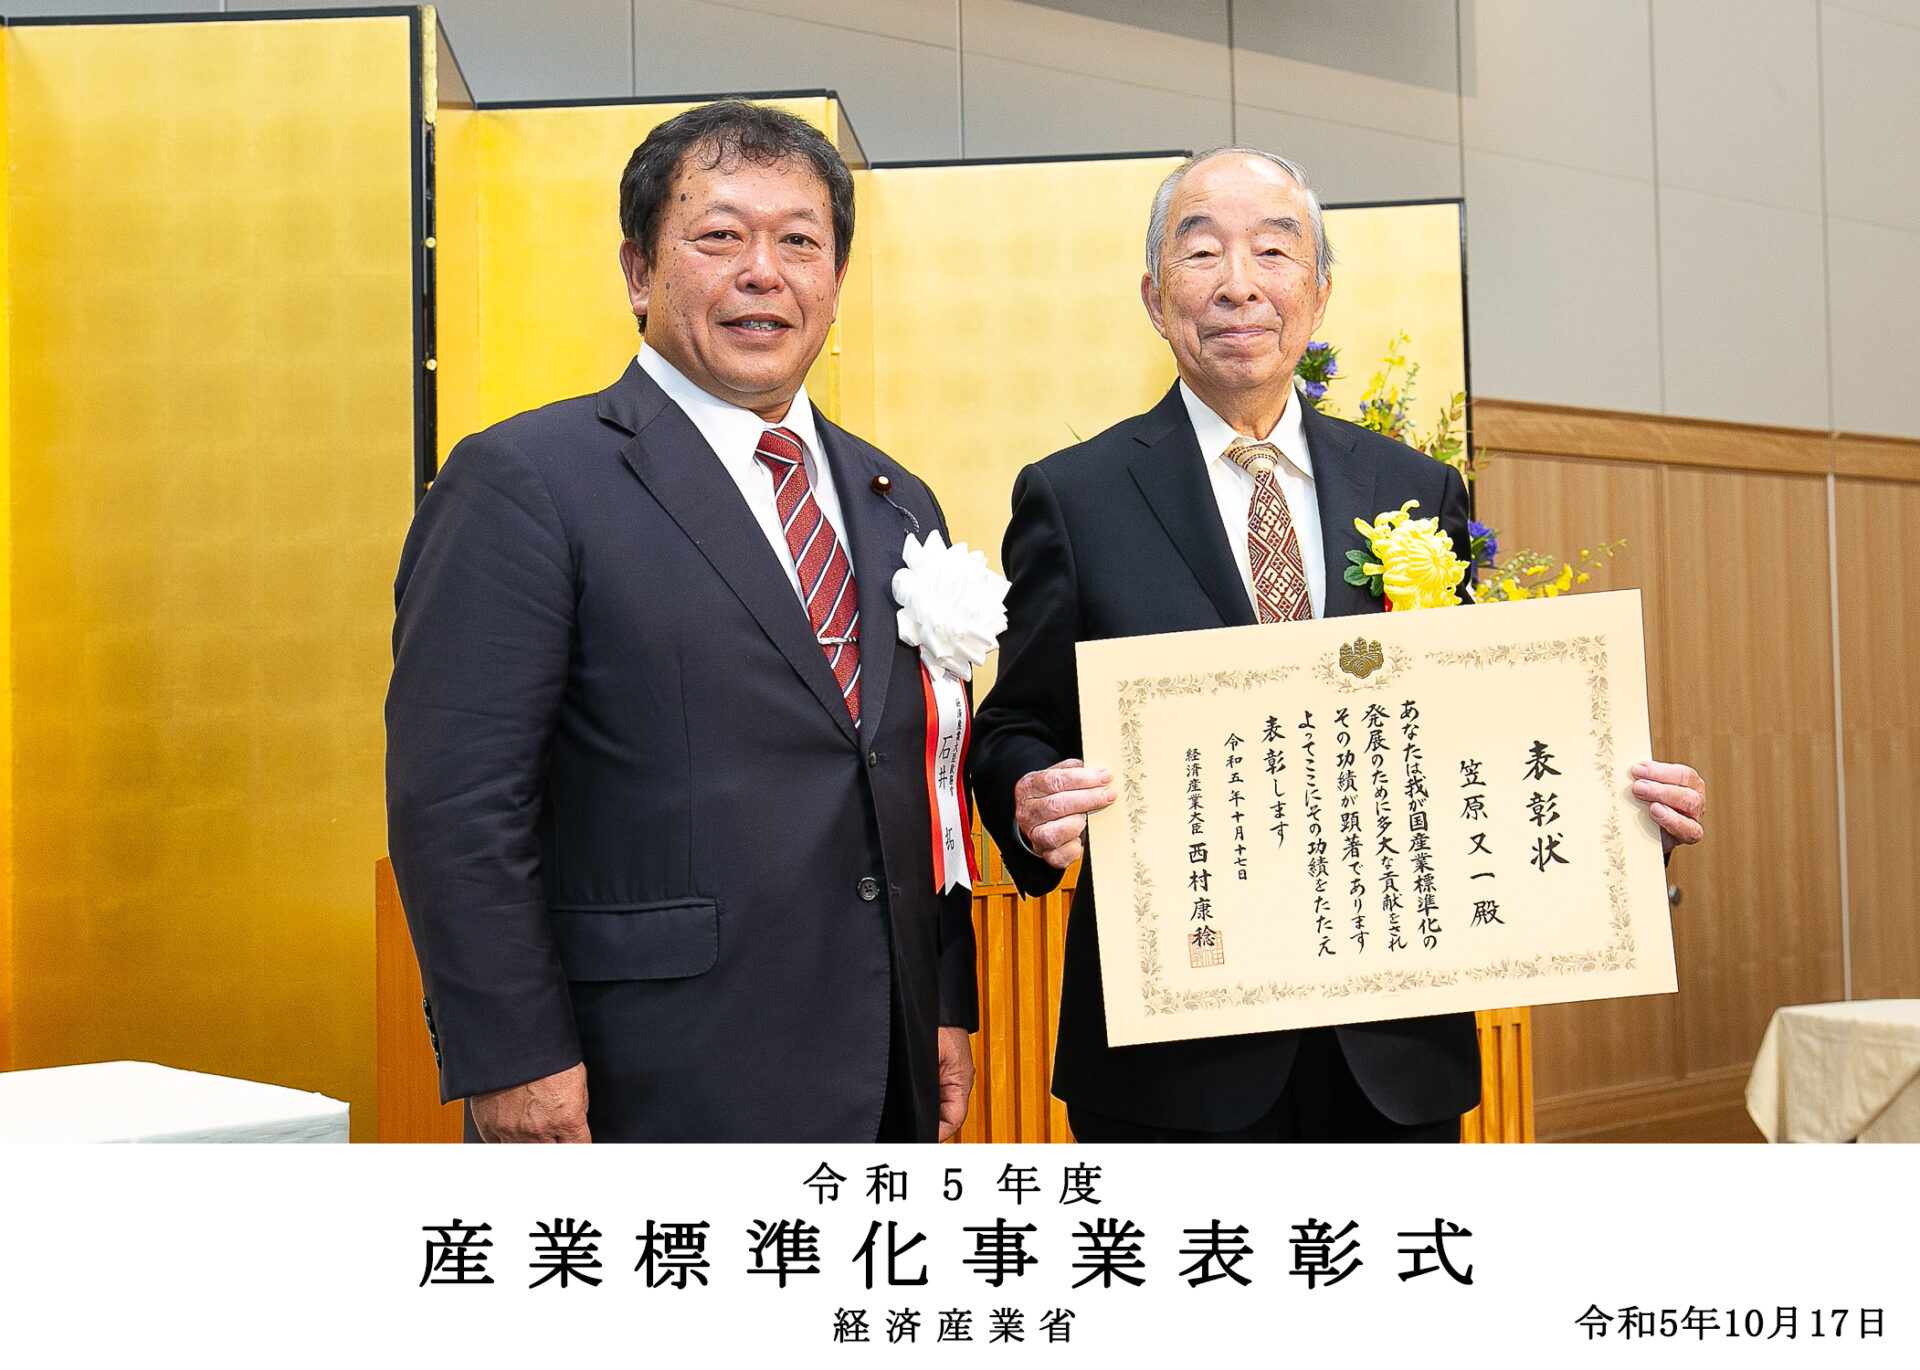 笠原又一氏（1964年 機械工学科卒業）がISO産業標準化事業経済産業大臣賞を受賞